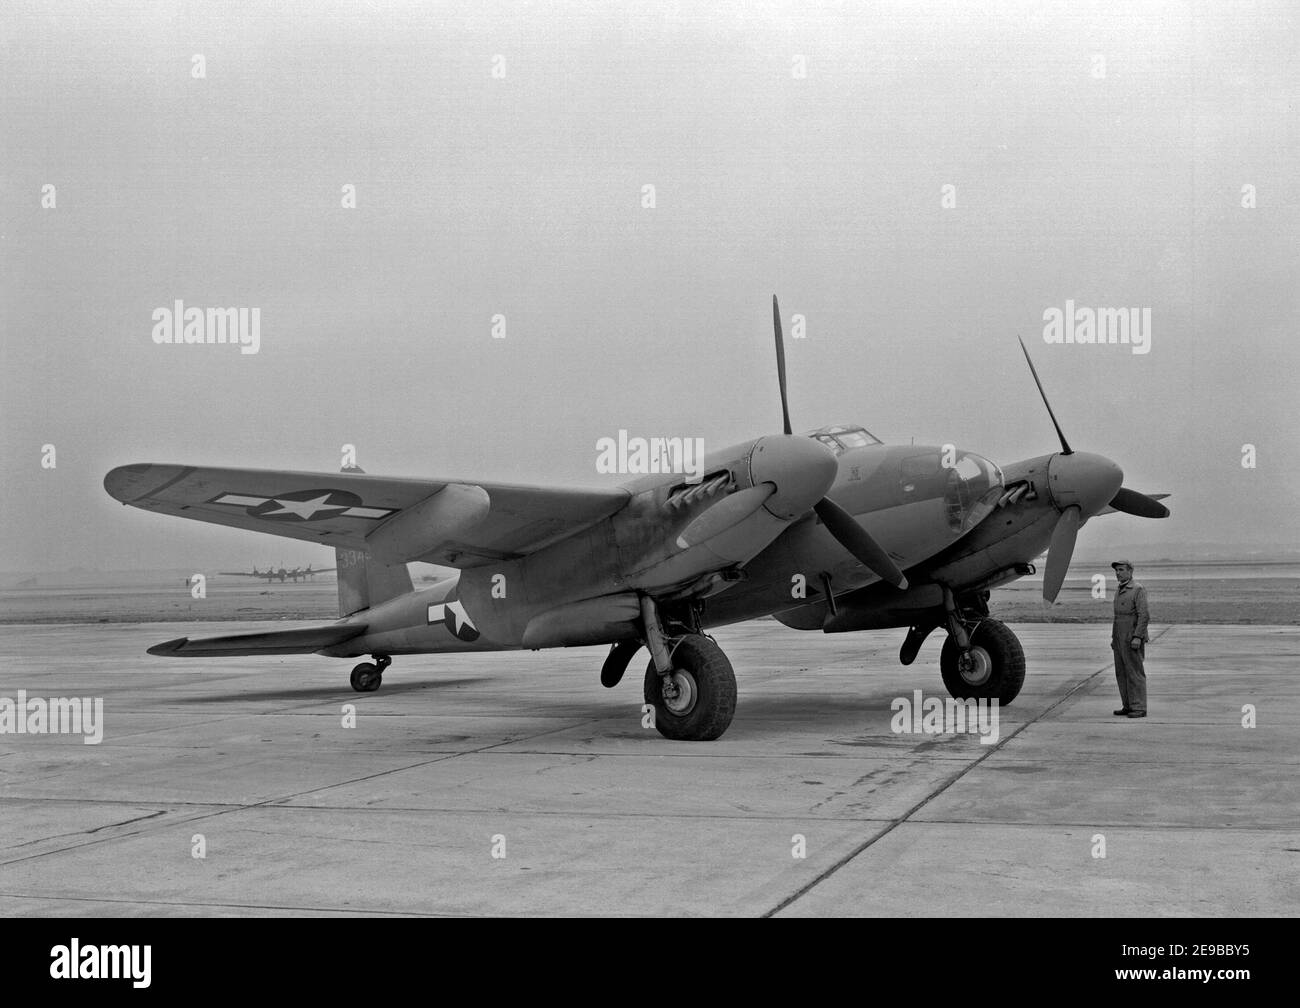 Eine US Army Air Force De Havilland Canada Mosquito, die im US National Advisory Committee for Aeronautics (NACA) Langley Research Center, Virginia (USA), von Testpilot Bill Gray während Längsstabilität und Kontrolle Studien des Flugzeugs im Jahr 1945 geflogen wurde. Dieses Flugzeug war ursprünglich ein Mosquito B Mk XX, die kanadische Version des Mosquito B Mk IV Bomberflugzeugs. 145 wurden gebaut, von denen 40 in Fotoaufklärungsflugzeuge für die USAAF, die die Flugzeuge F-8 bezeichnete, umgebaut wurden. 4. Januar 1945 Stockfoto